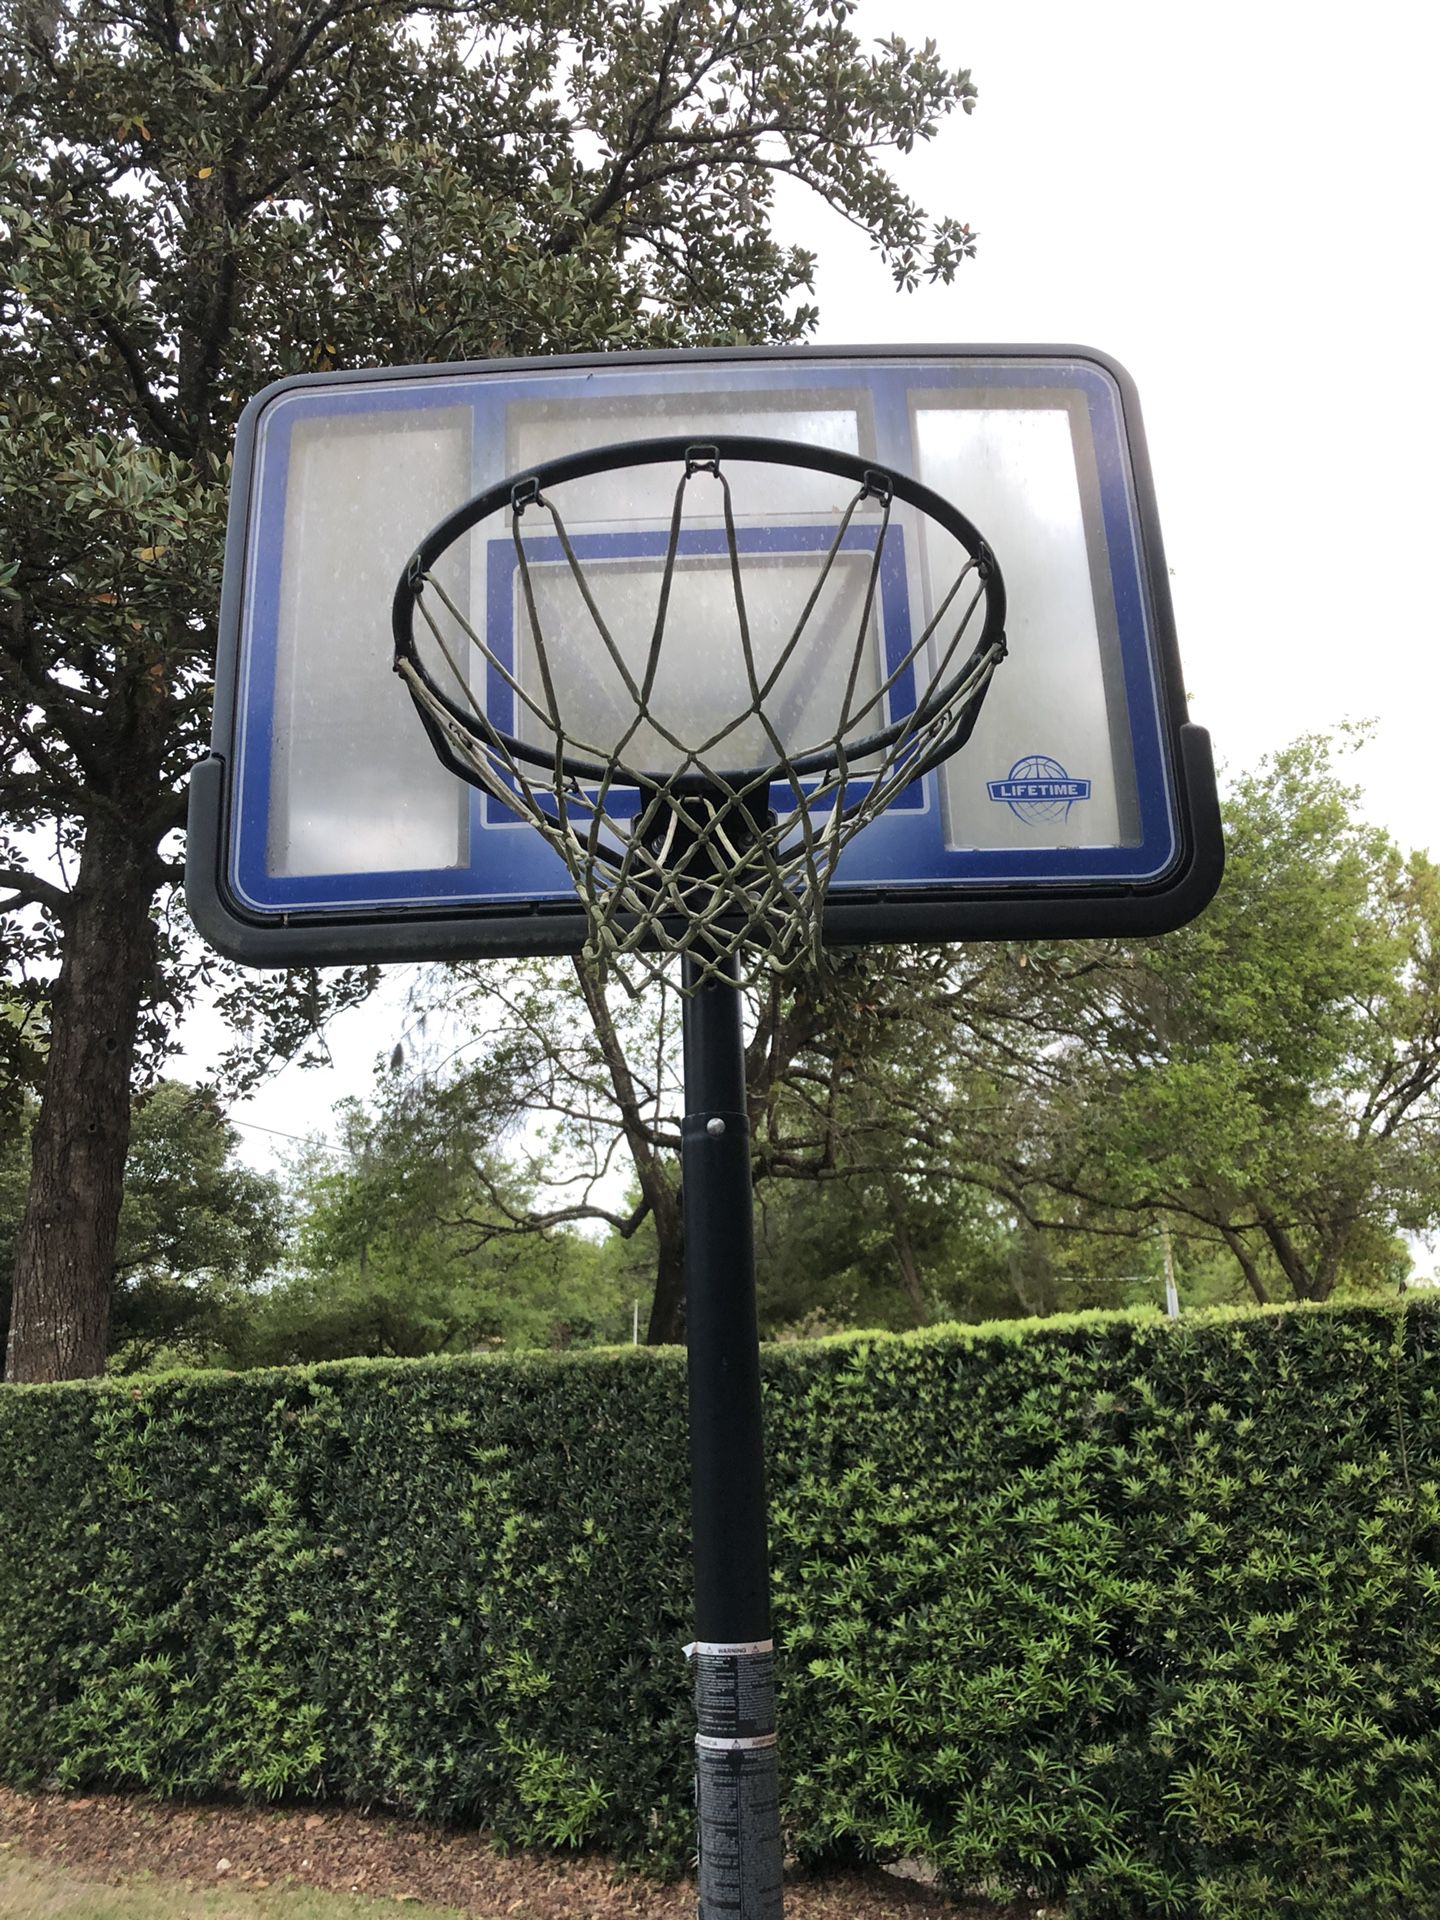 Full size basketball hoop, in good shape